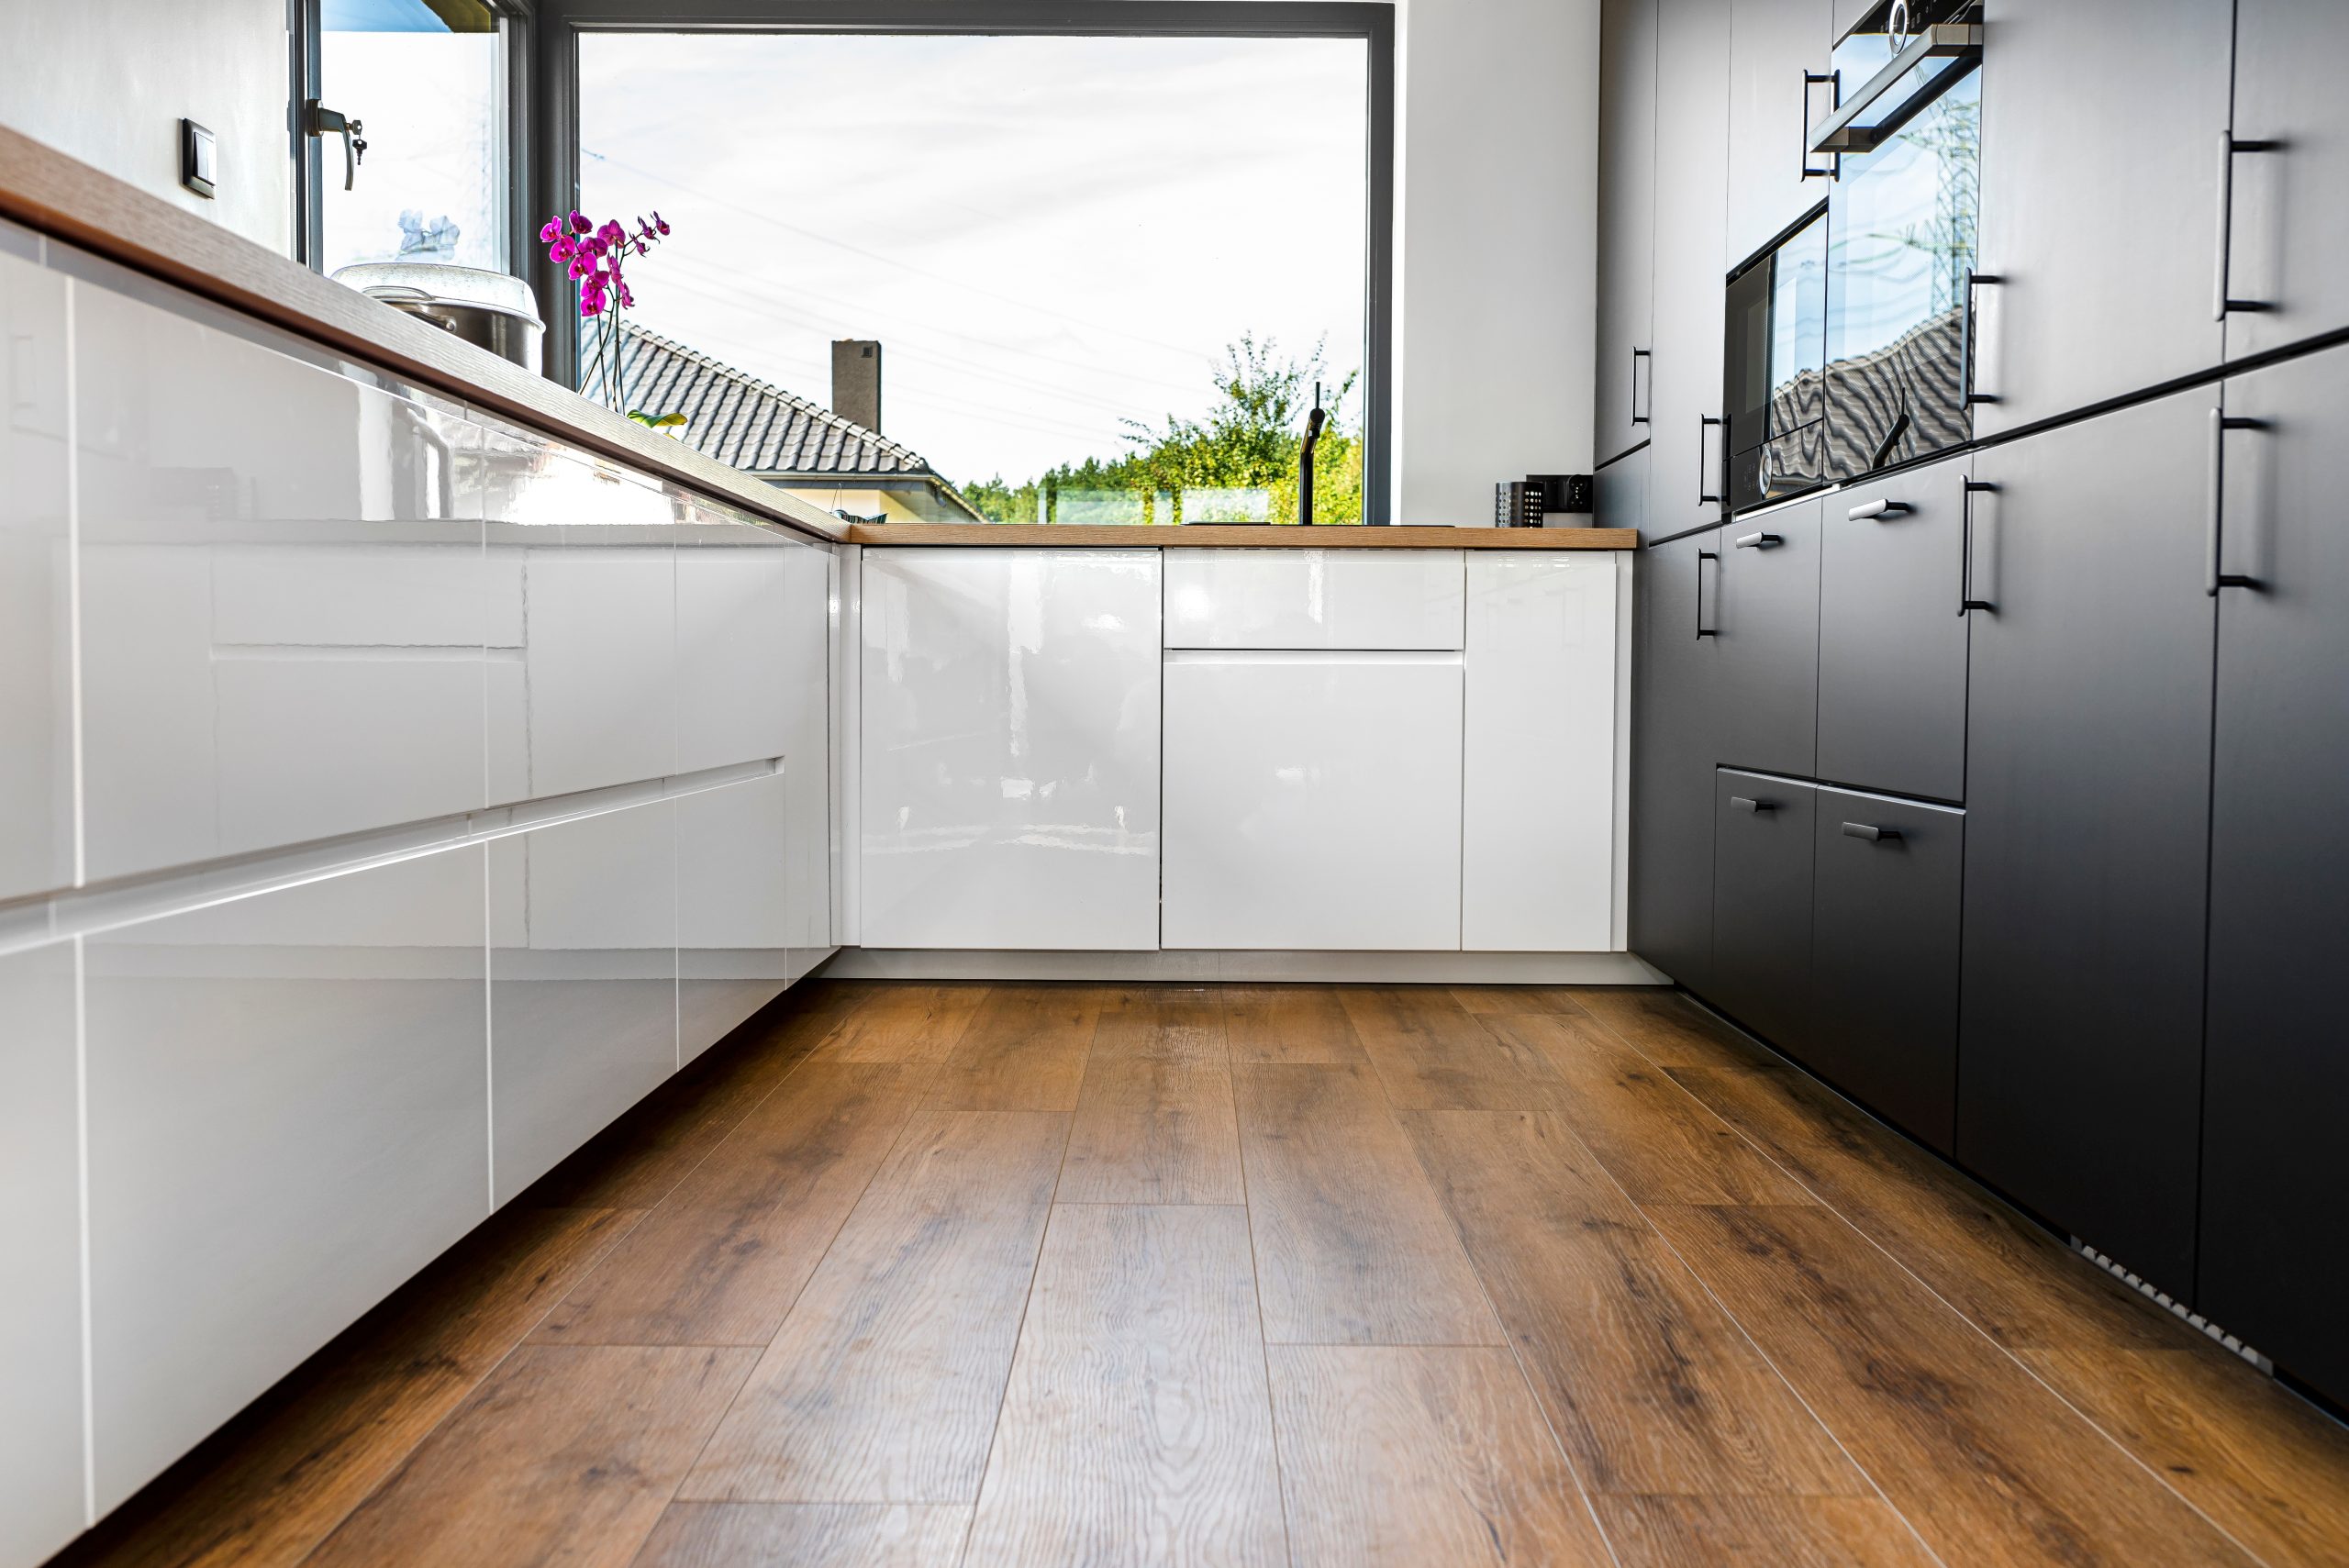 Eine moderne Küche mit sauber verlegtem Vinylboden. Foto Kinek00 via Envato